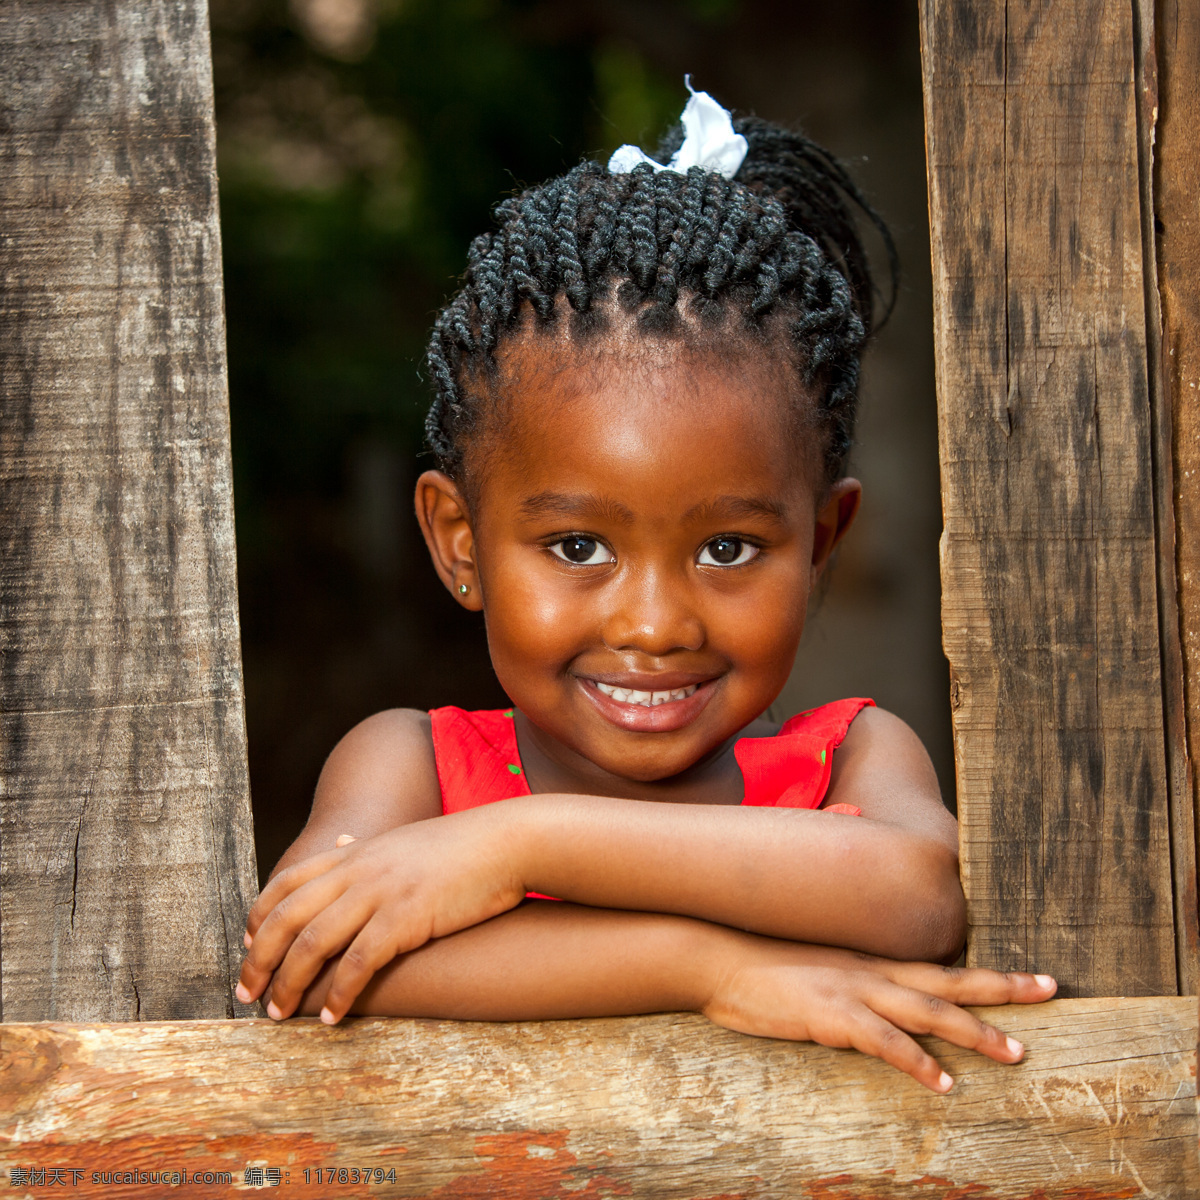 可爱 小女孩 人物 黑人 非洲人 非洲土著人 动物皮毛 项圈 项链 生活人物 人物图库 小孩 可爱的小女孩 人物图片